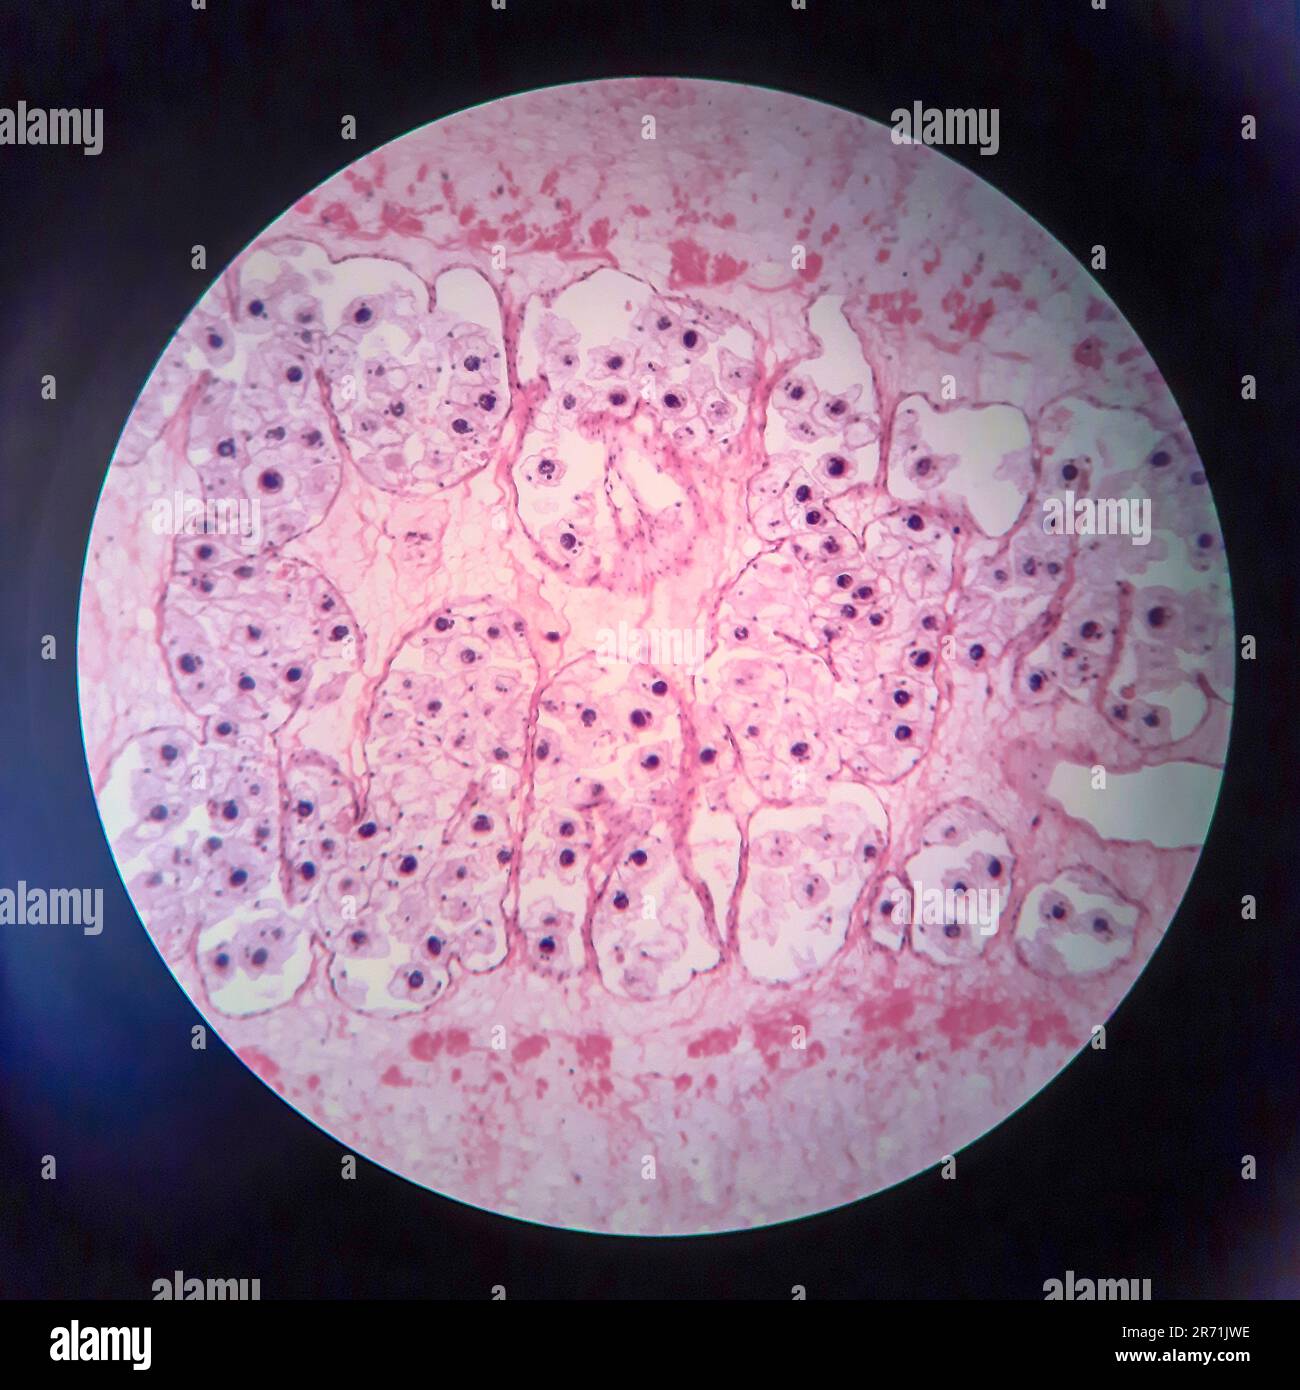 Schweinebandwurm Taenia solium, Schnitt durch den Körper, Lichtmikroskopie Stockfoto